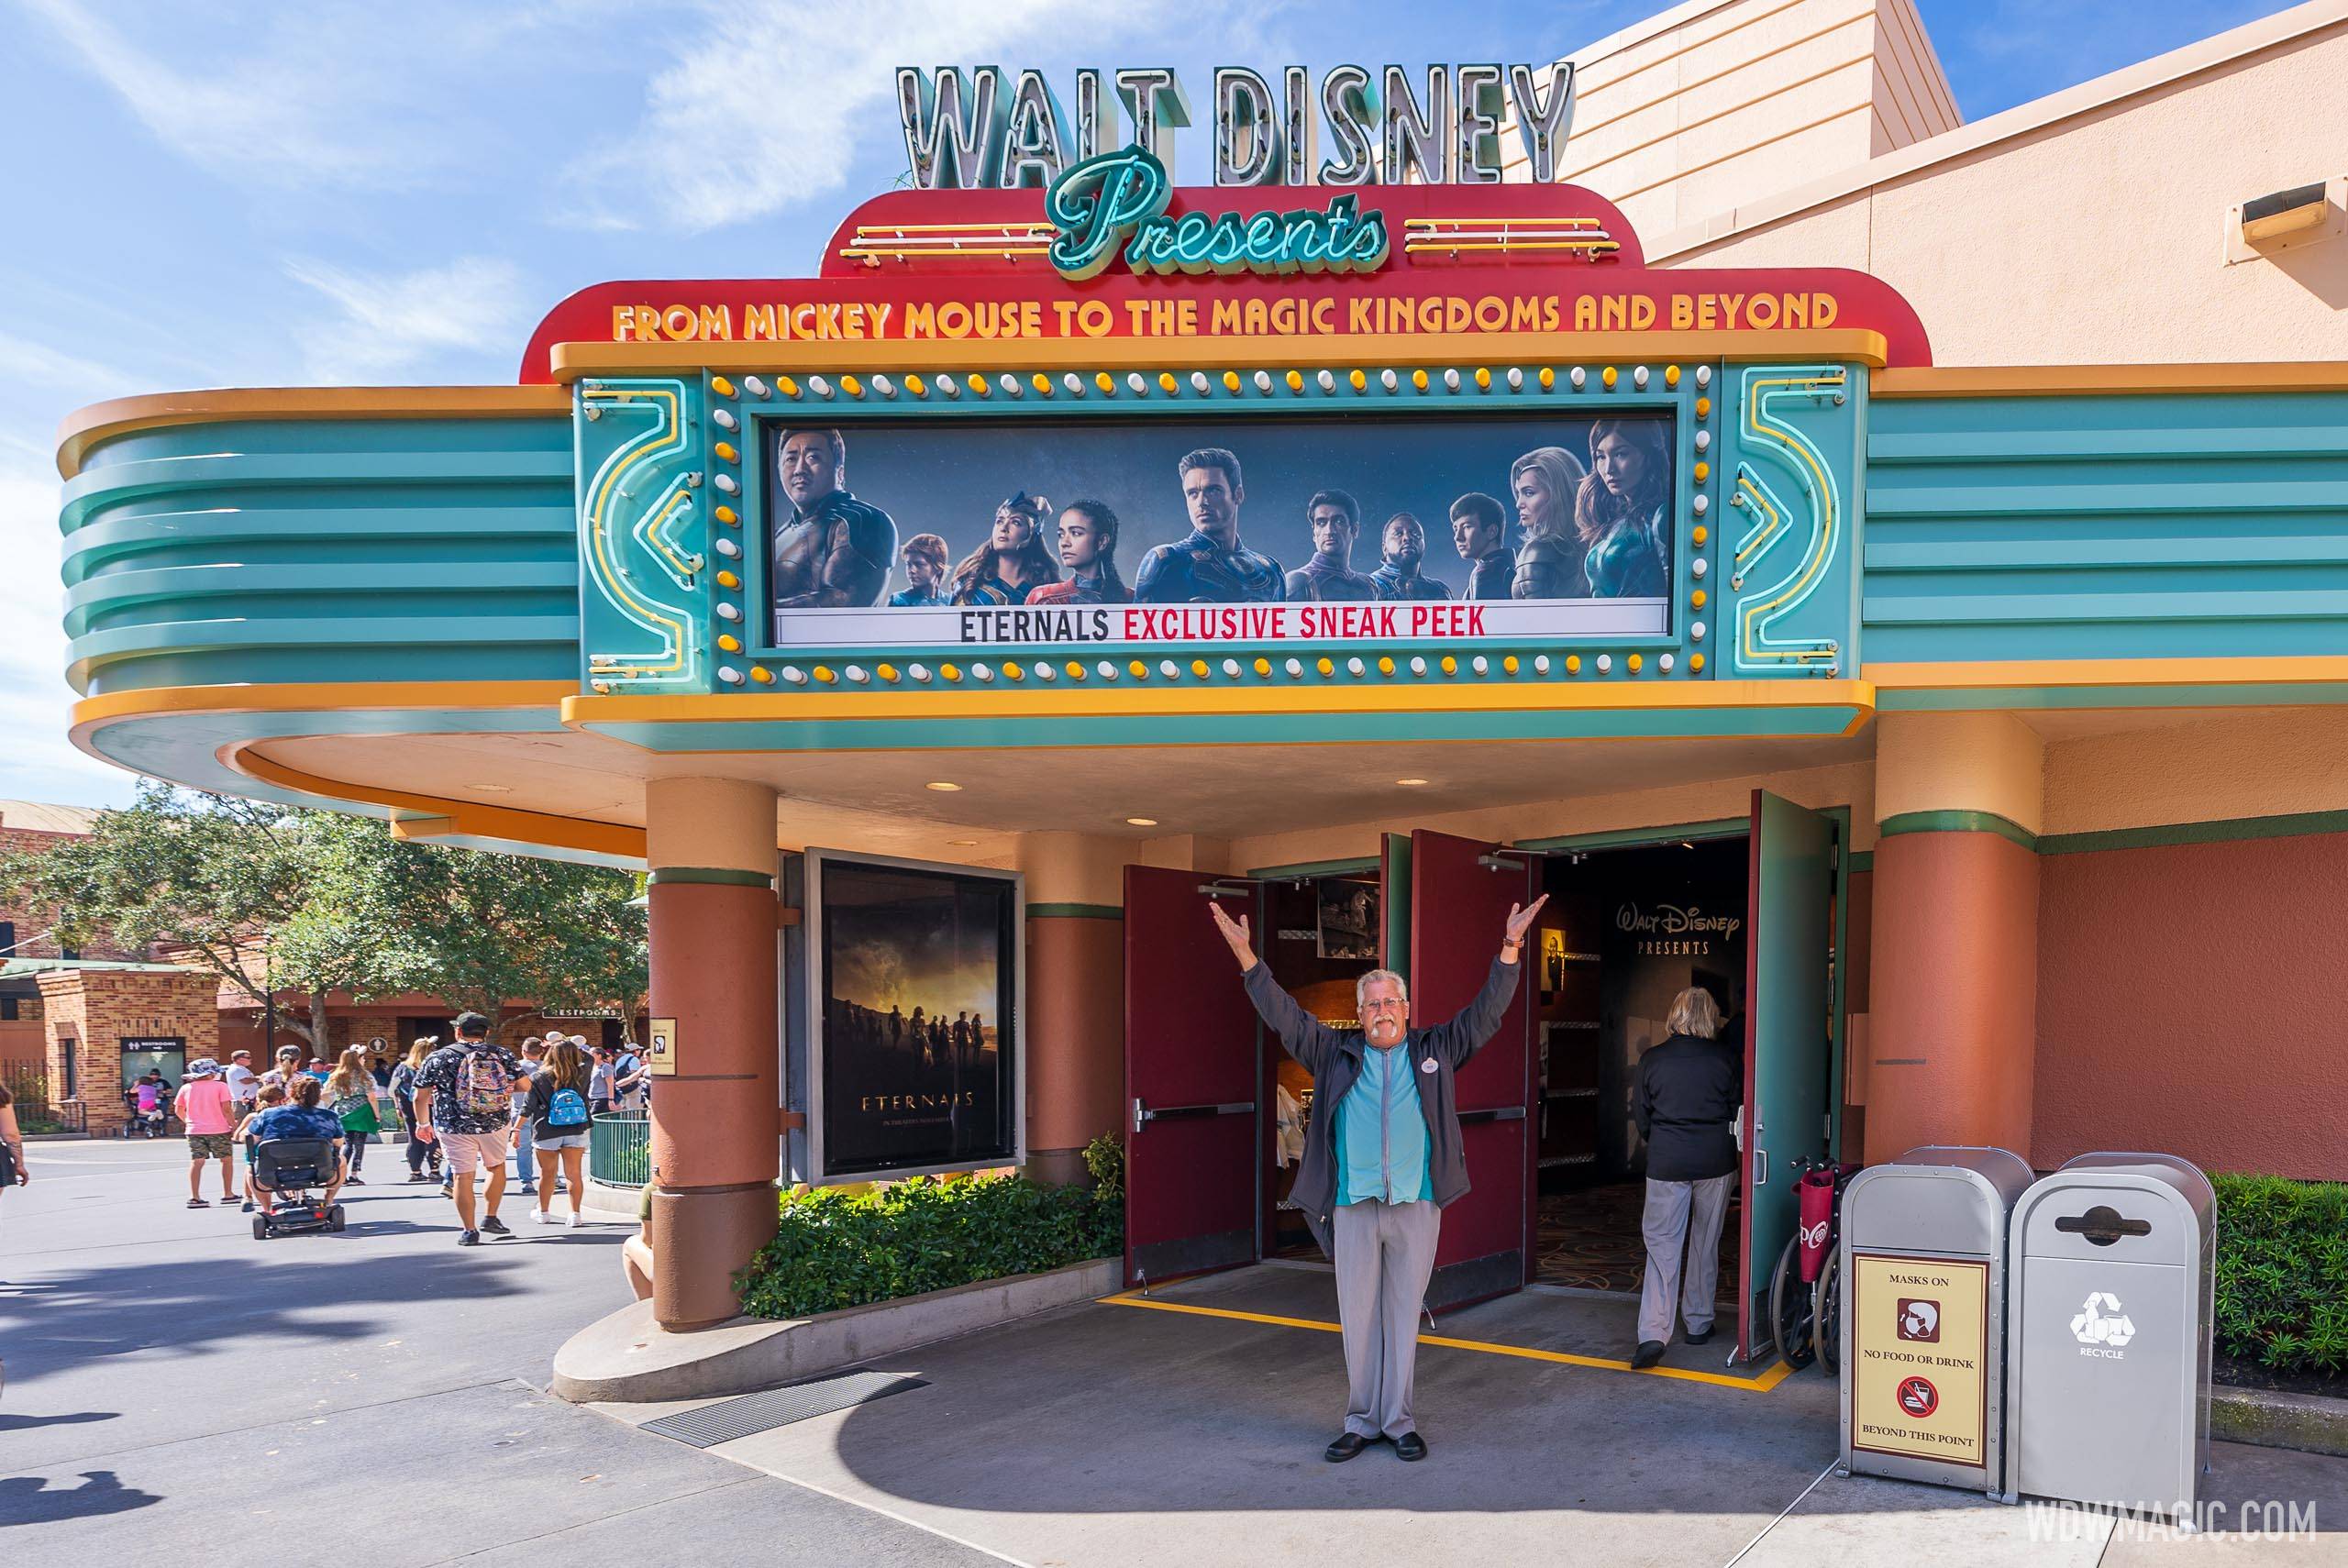 Sneak peek of 'Ralph Breaks the Internet' begins Friday at Disney's Hollywood Studios